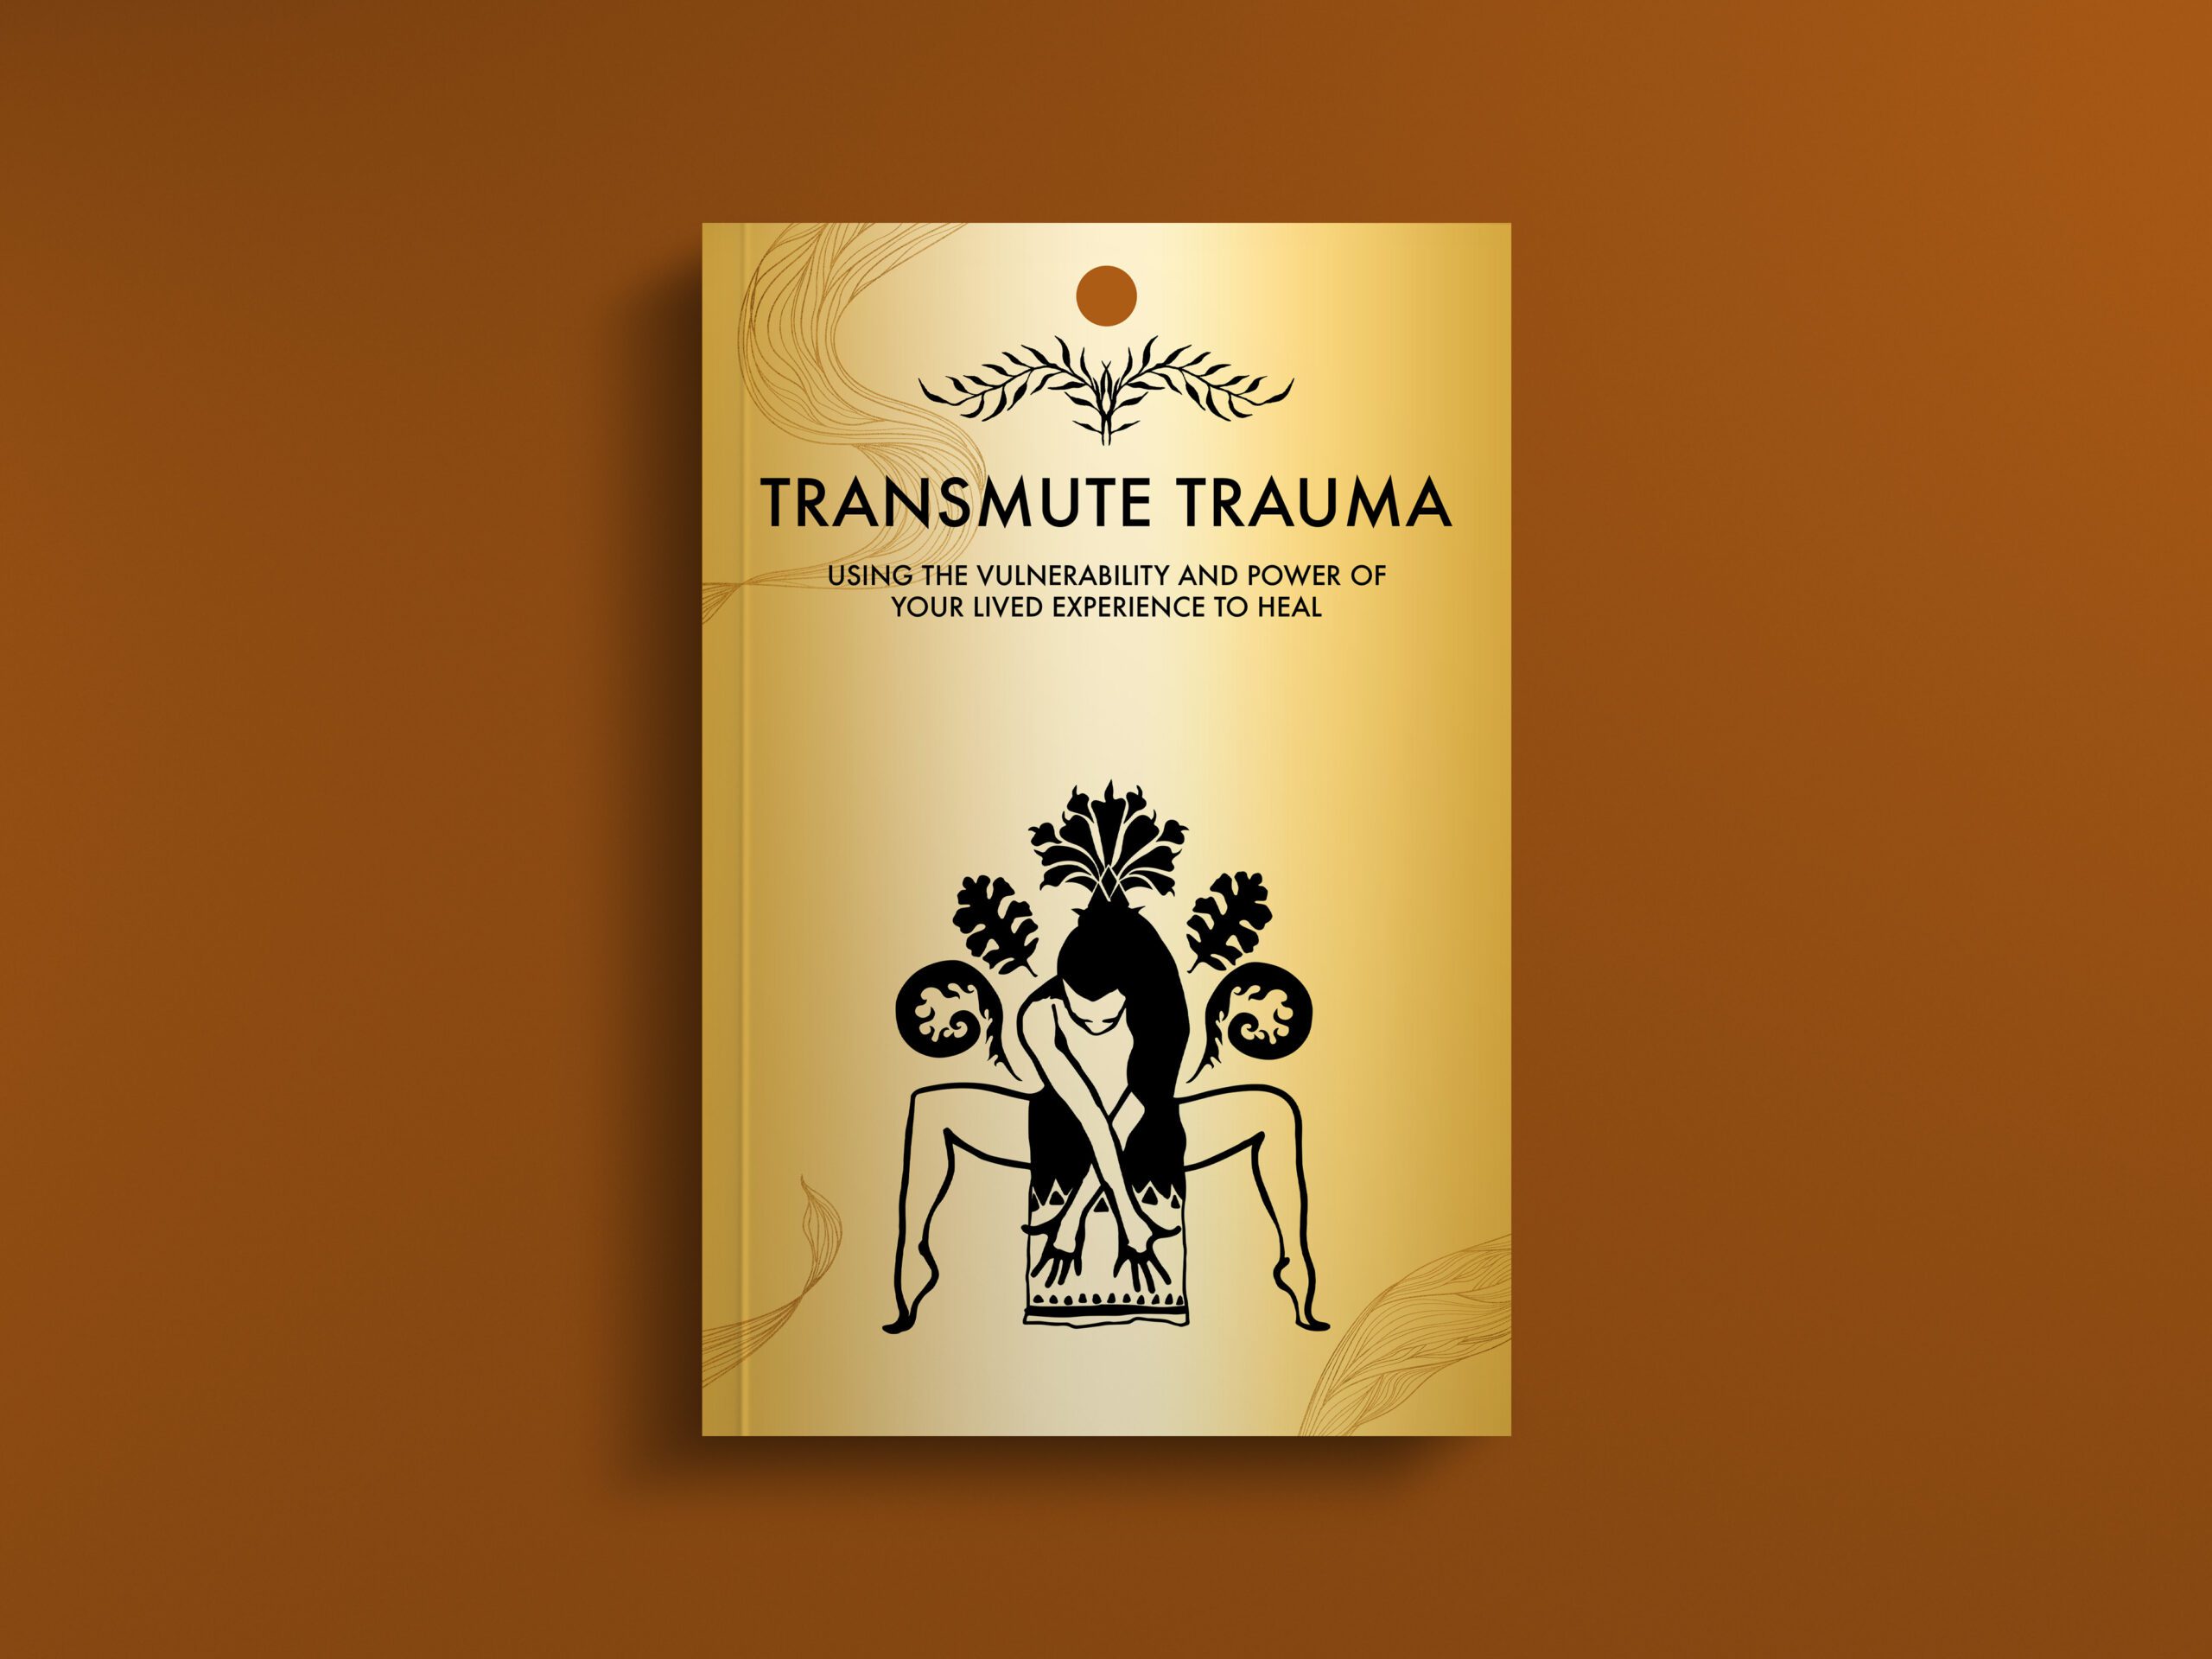 TRANSMUTE TRAUMA BOOK COVER